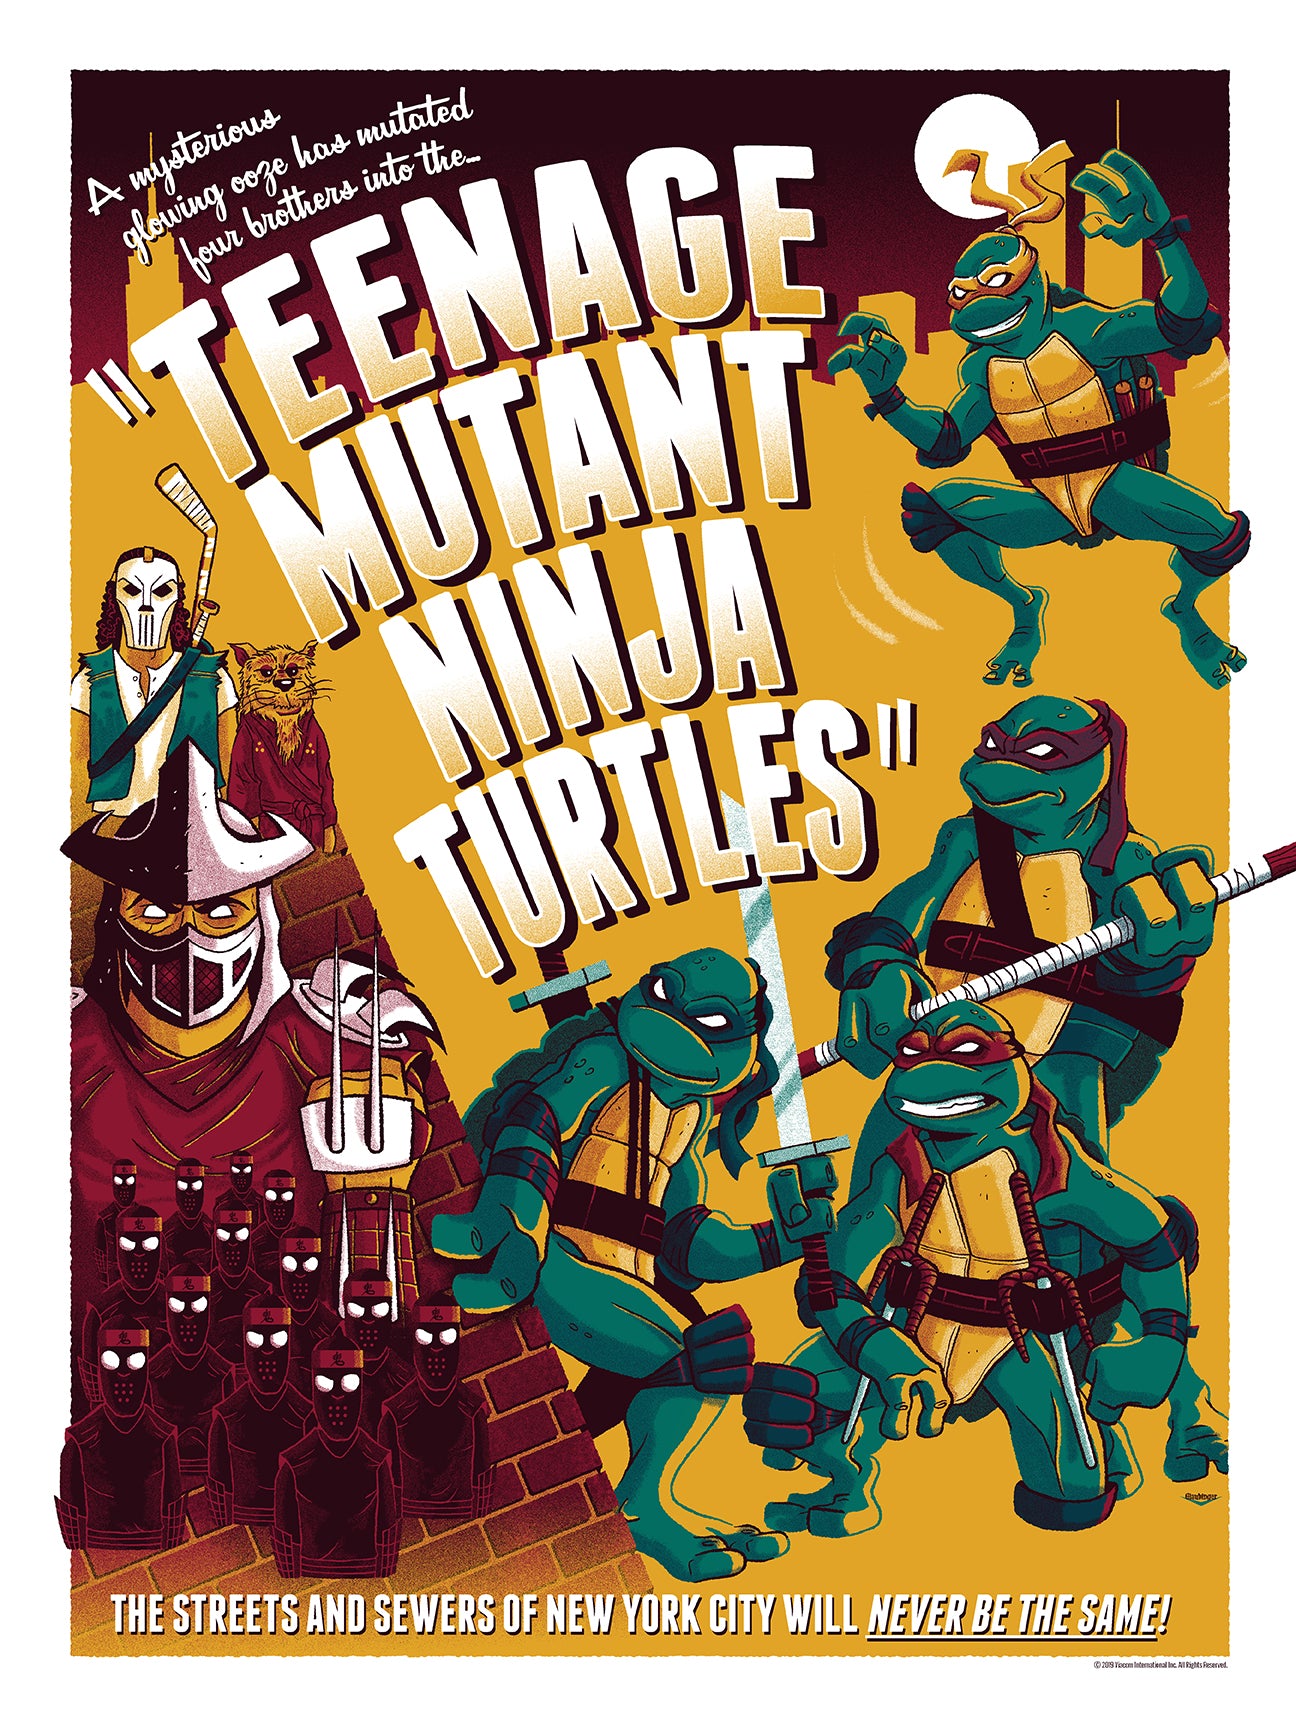 Ian Glaubinger "Teenage Mutant Ninja Turtles"